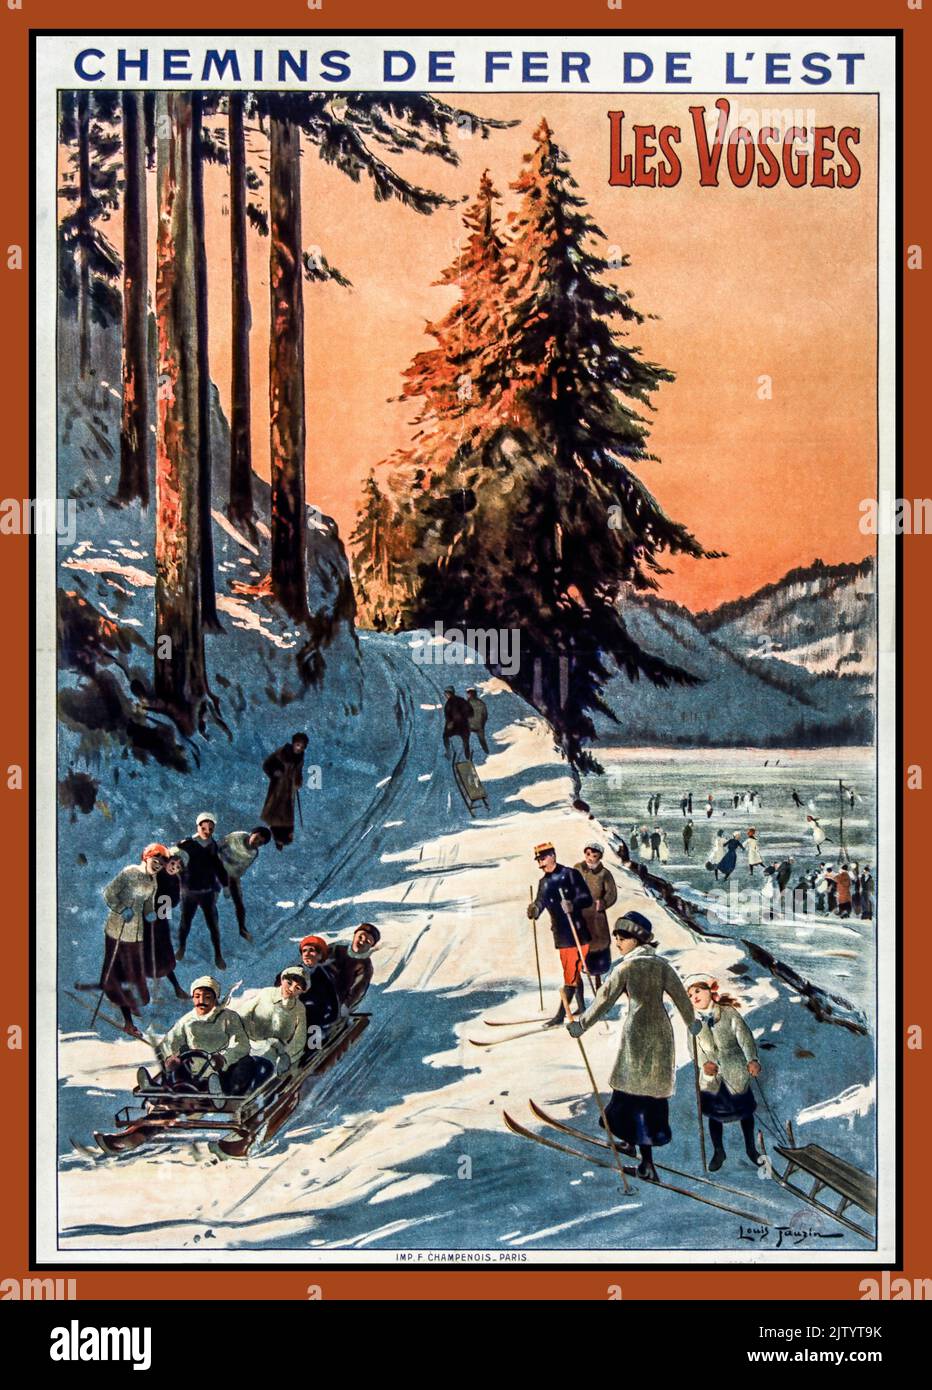 Vintage French Railways Travel Poster Winter Sports Family Fun Ski skiing Chemins de fer de l'Est. Les Vosges, affiche VOSGES Winter Snow France 1900s by artist Louis Tauzin Stock Photo